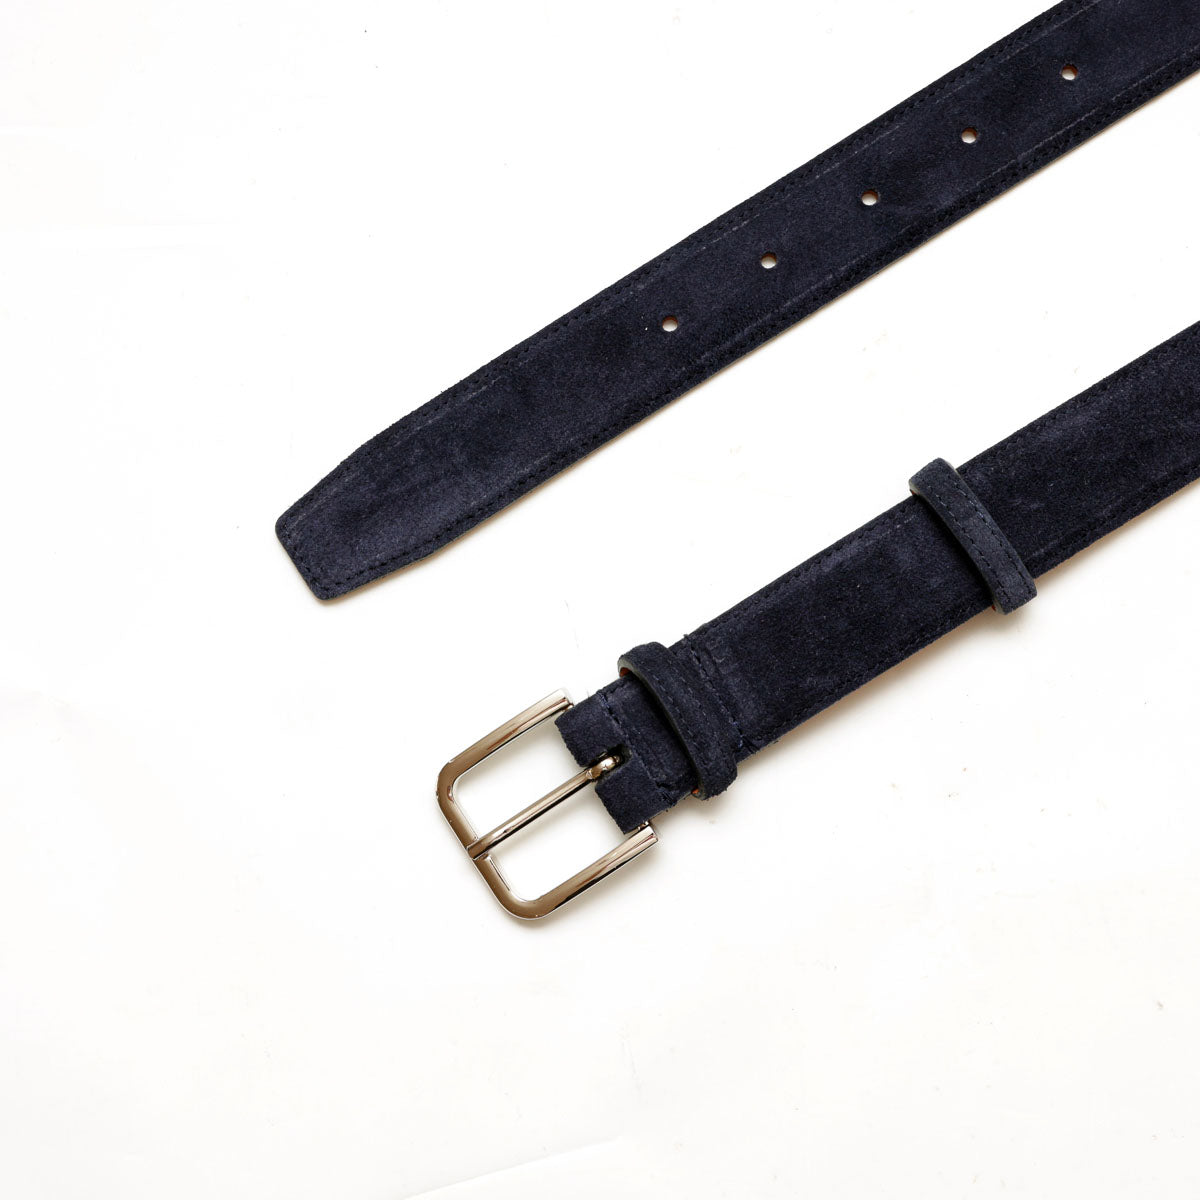 Cintura da uomo in pelle scamosciata blu e fibbia color argento lucido, prodotta da Pianigiani.